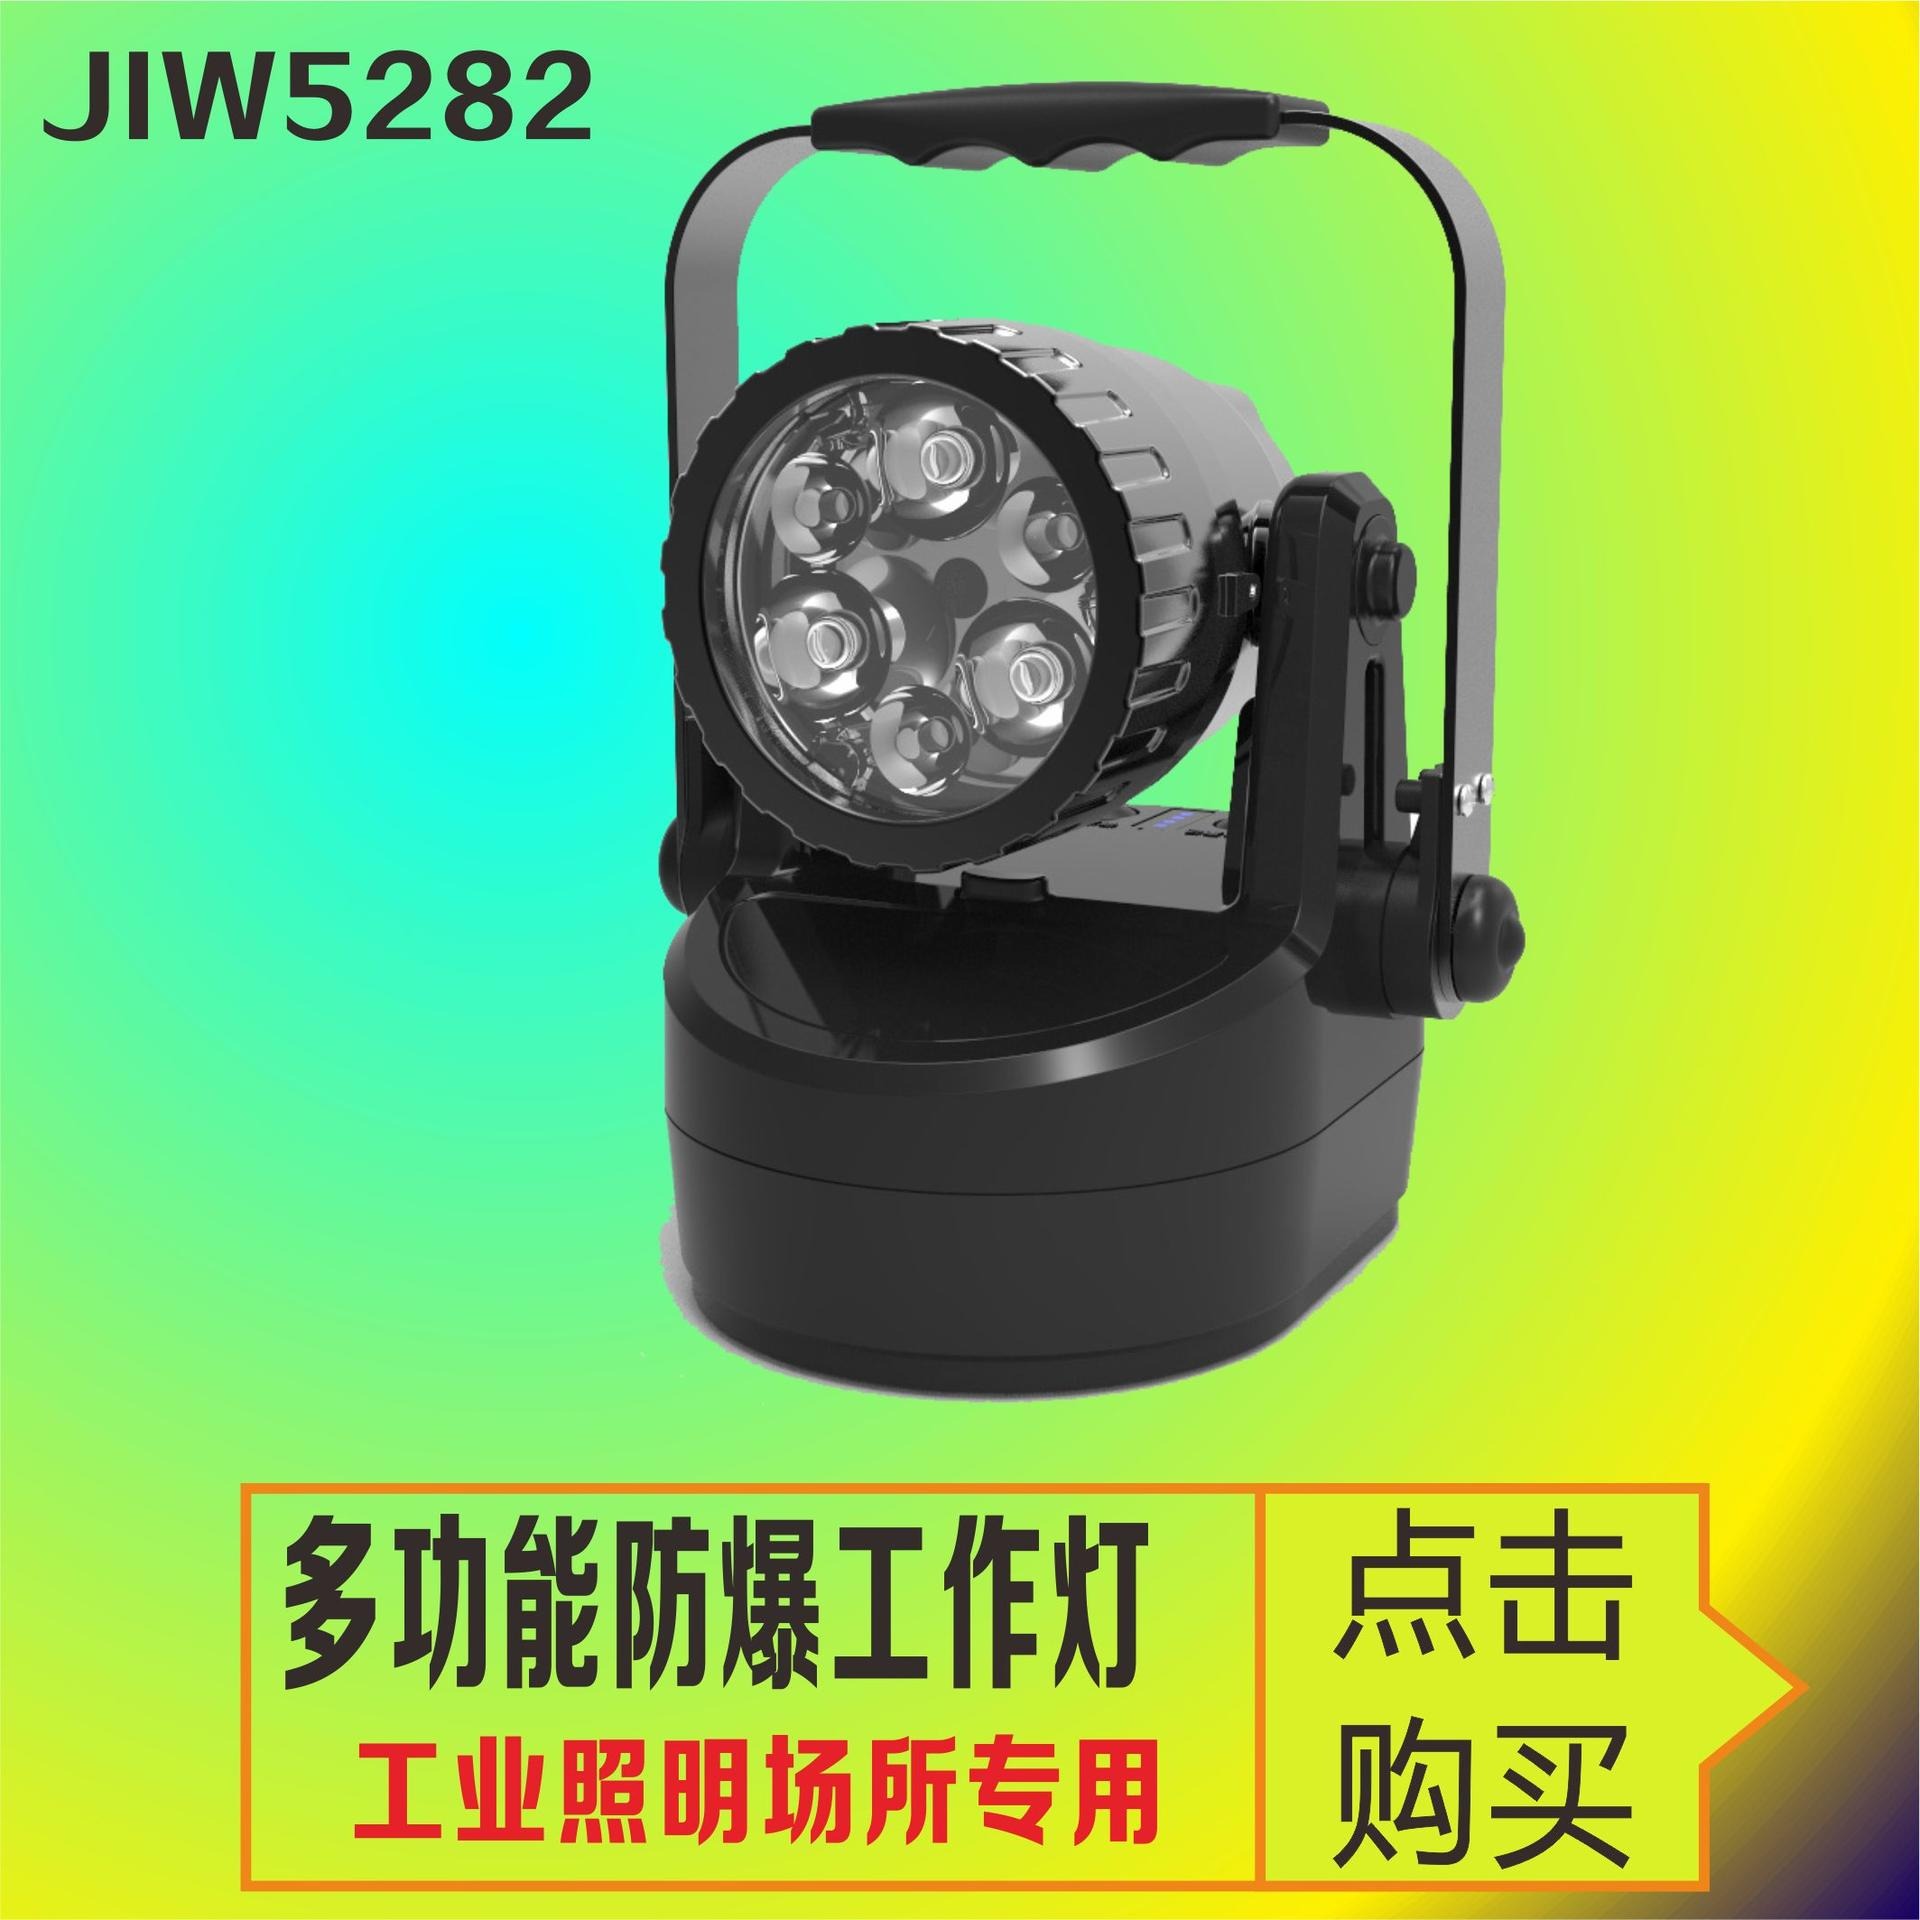 洲创电气夜间野外作业照明灯 JIW5282轻便式多功能强光灯 防爆检修磁力吸附灯 JIW5281手提探照灯